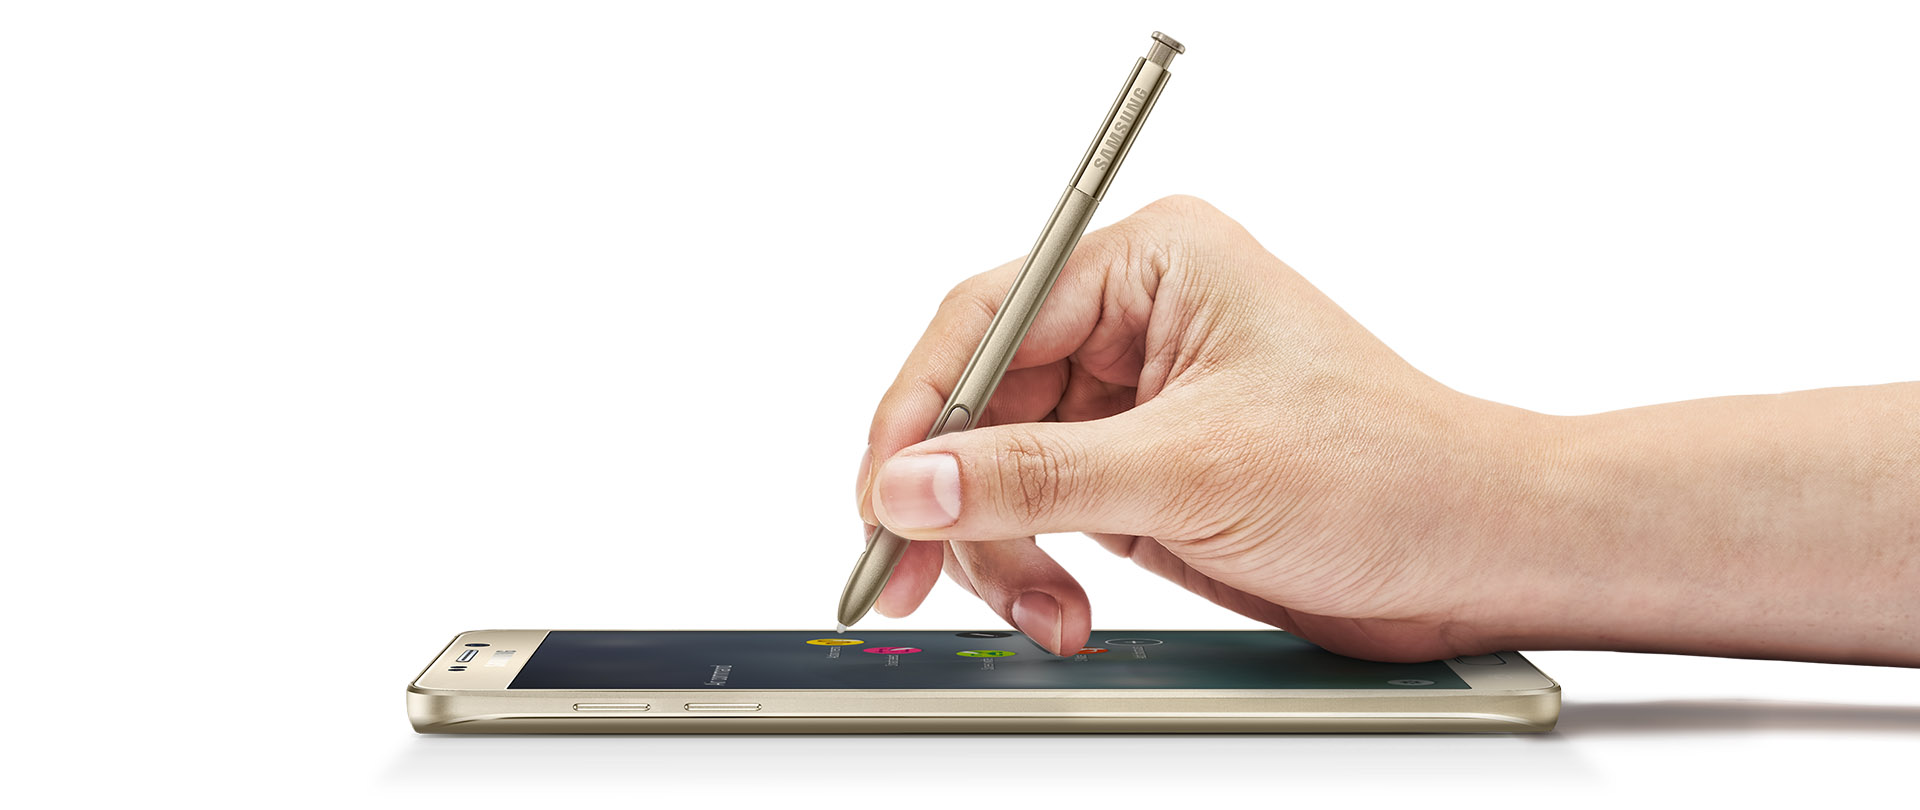 El Galaxy Note 5 con su inseparable S-Pen.